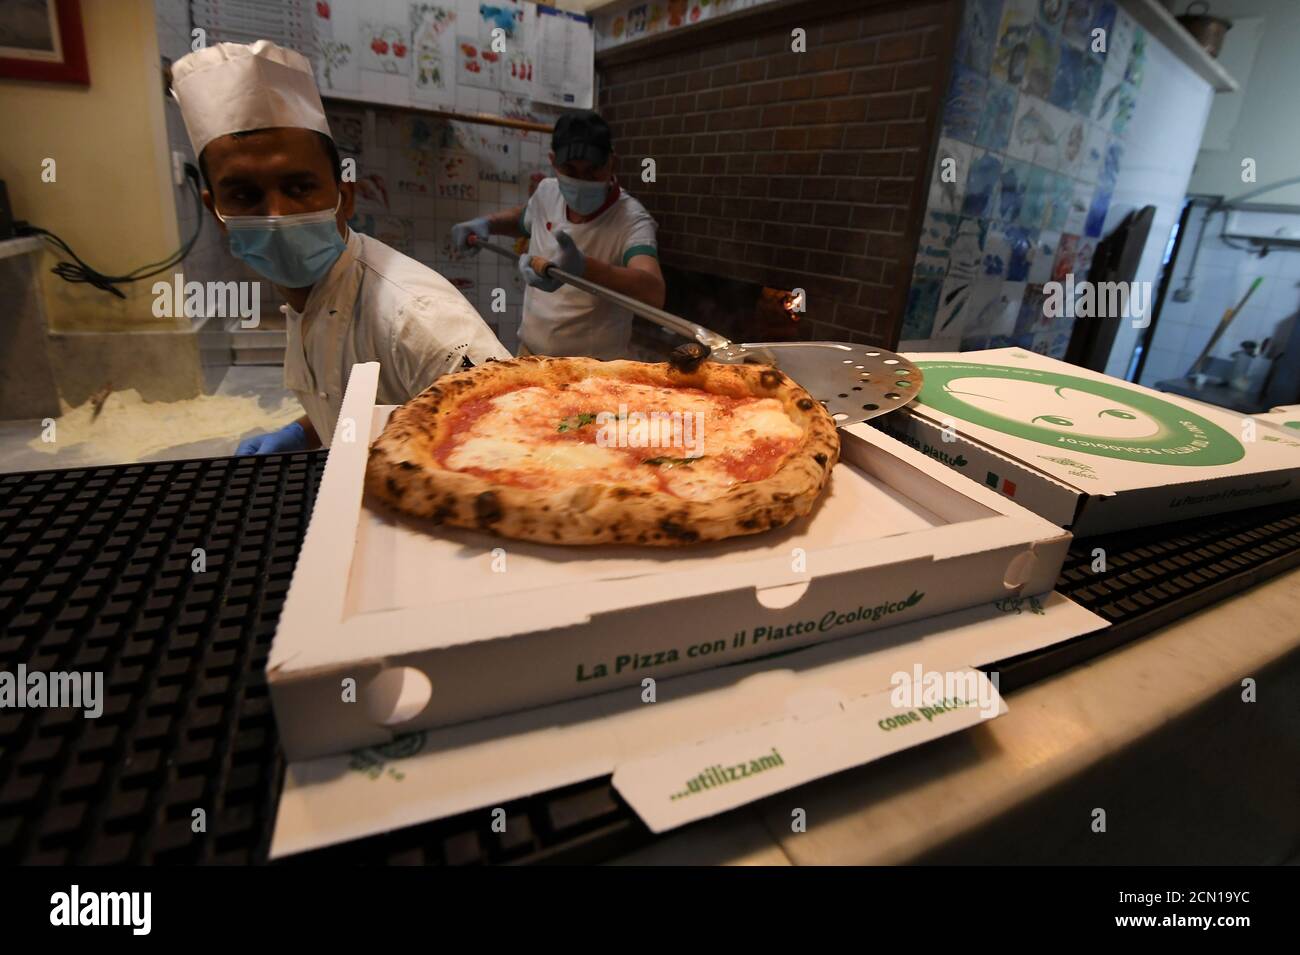 Mitarbeiter in der Peppo al Cosimato Pizzeria, die Gesichtsschutzmasken und  Handschuhe tragen, stellen nach dem Ausbruch der Coronavirus-Krankheit  (COVID-19) in Rom, Italien, am 24. April 2020 Pizzen zur Lieferung bereit.  REUTERS/Alberto Lingria